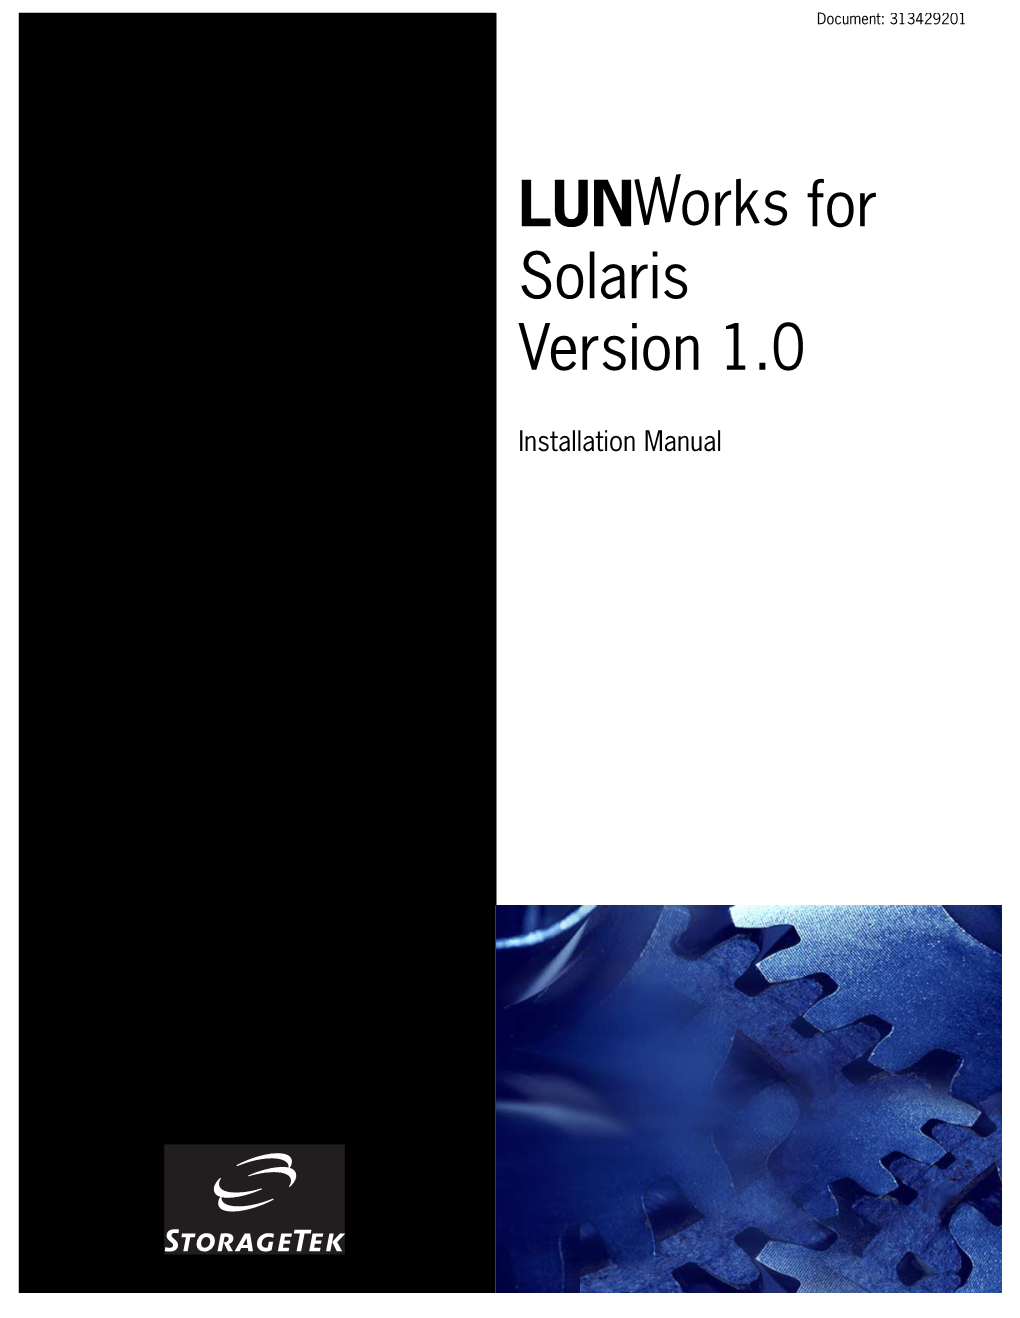 Lunworks for Solaris Version 1.0